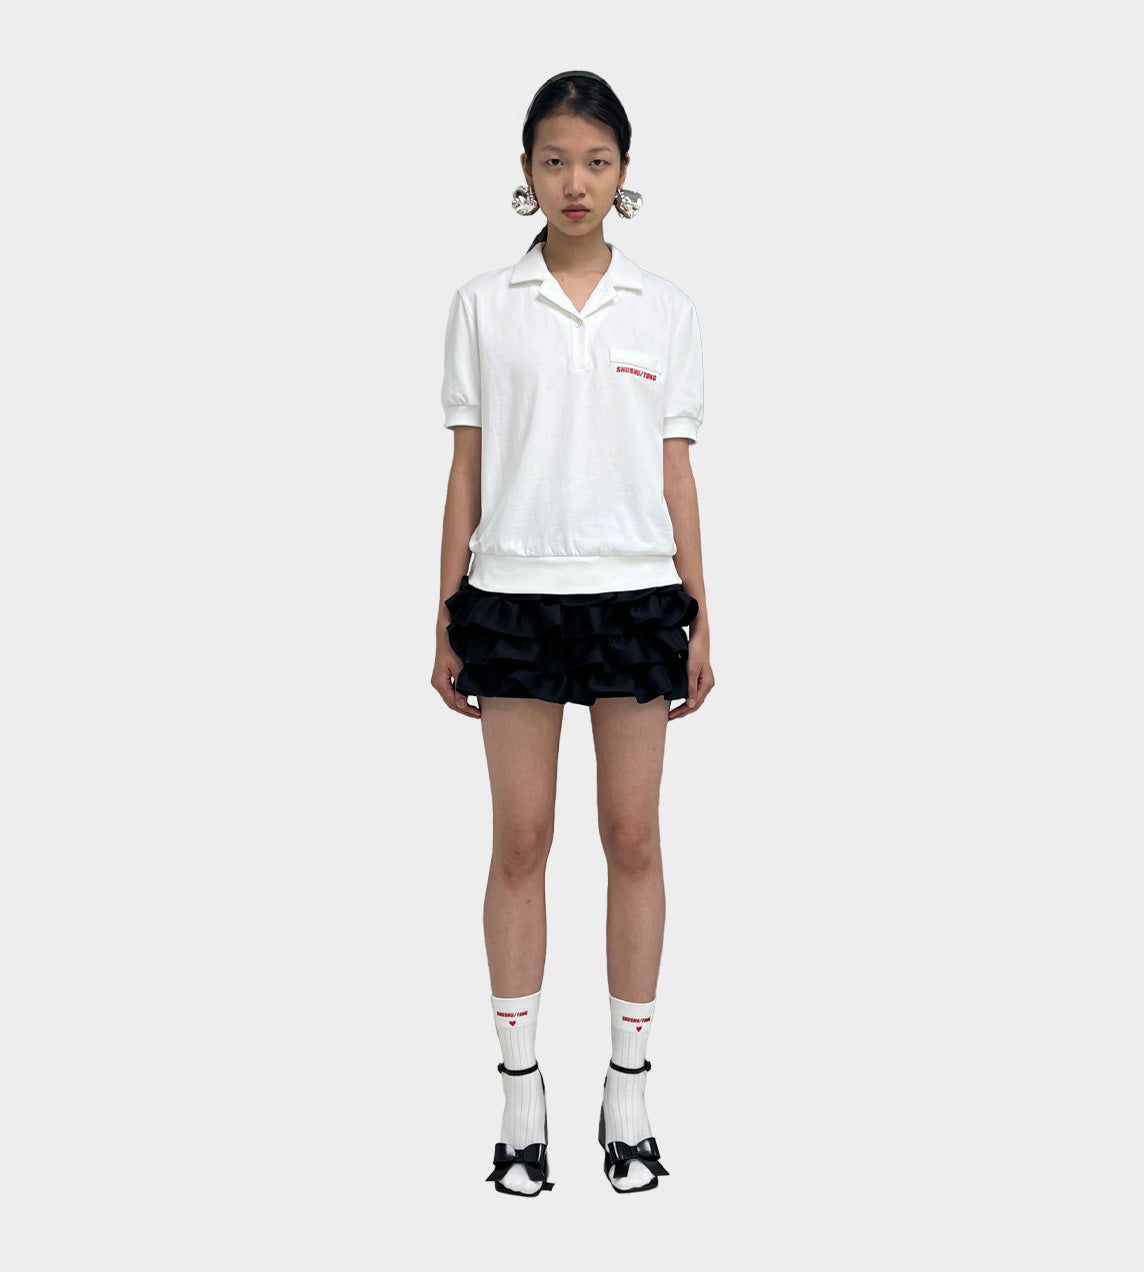 ShuShu/Tong - Basic Polo Shirt White